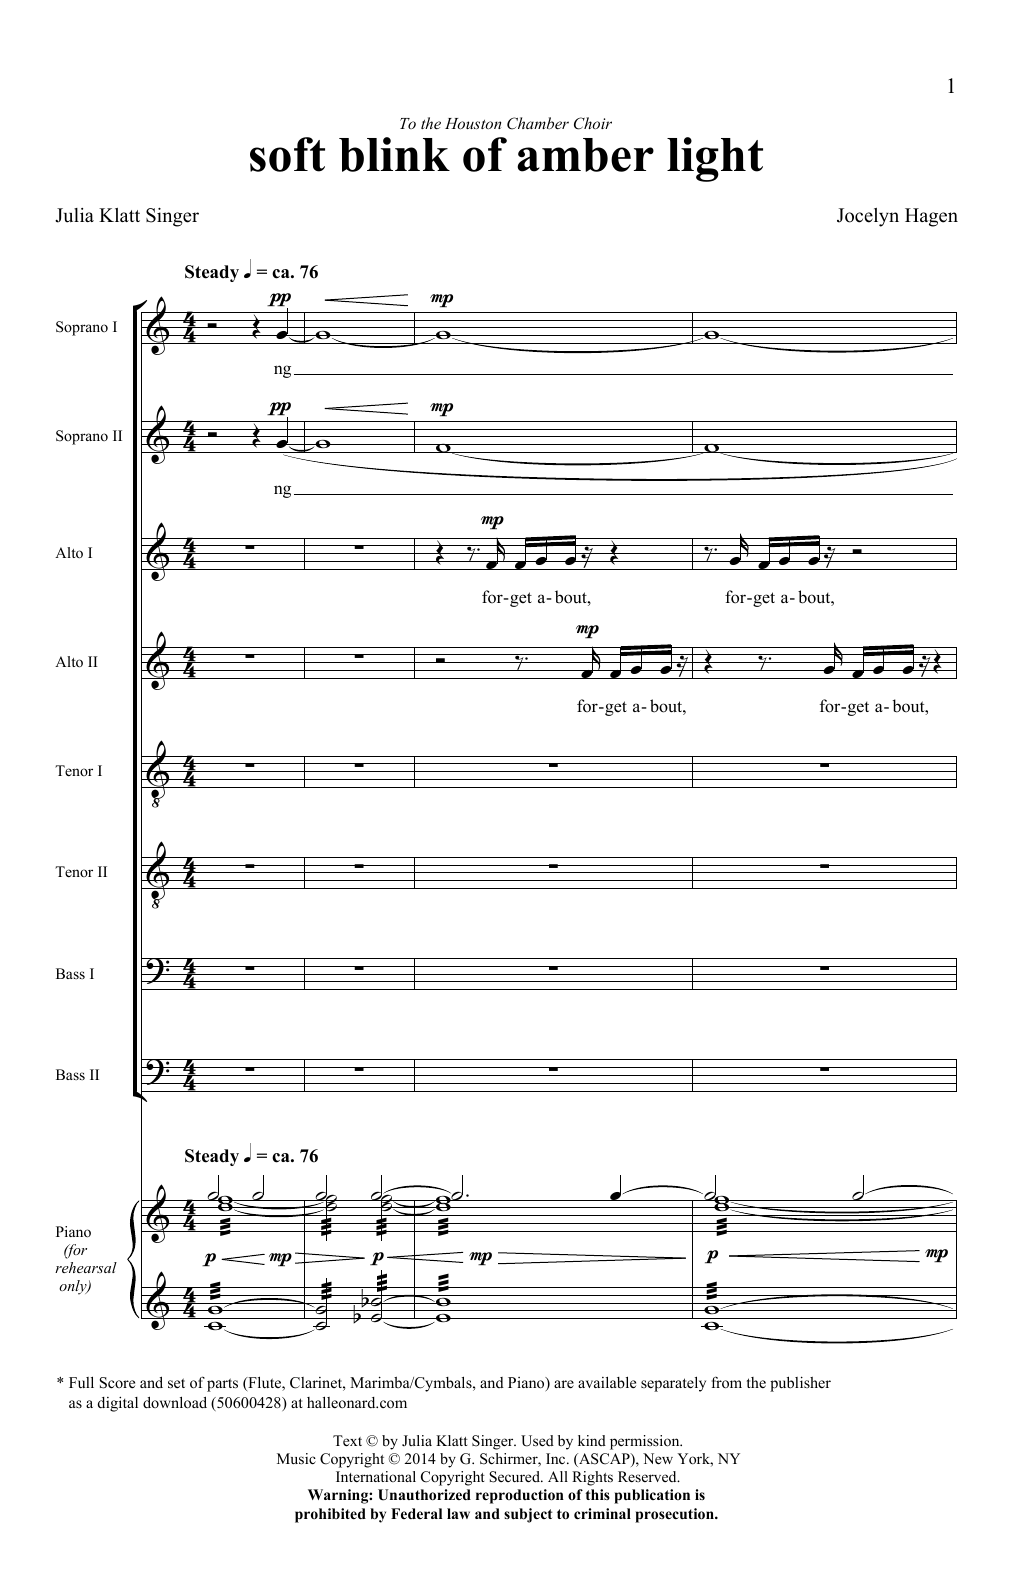 Jocelyn Hagen soft blink of amber light Sheet Music Notes & Chords for SATB - Download or Print PDF